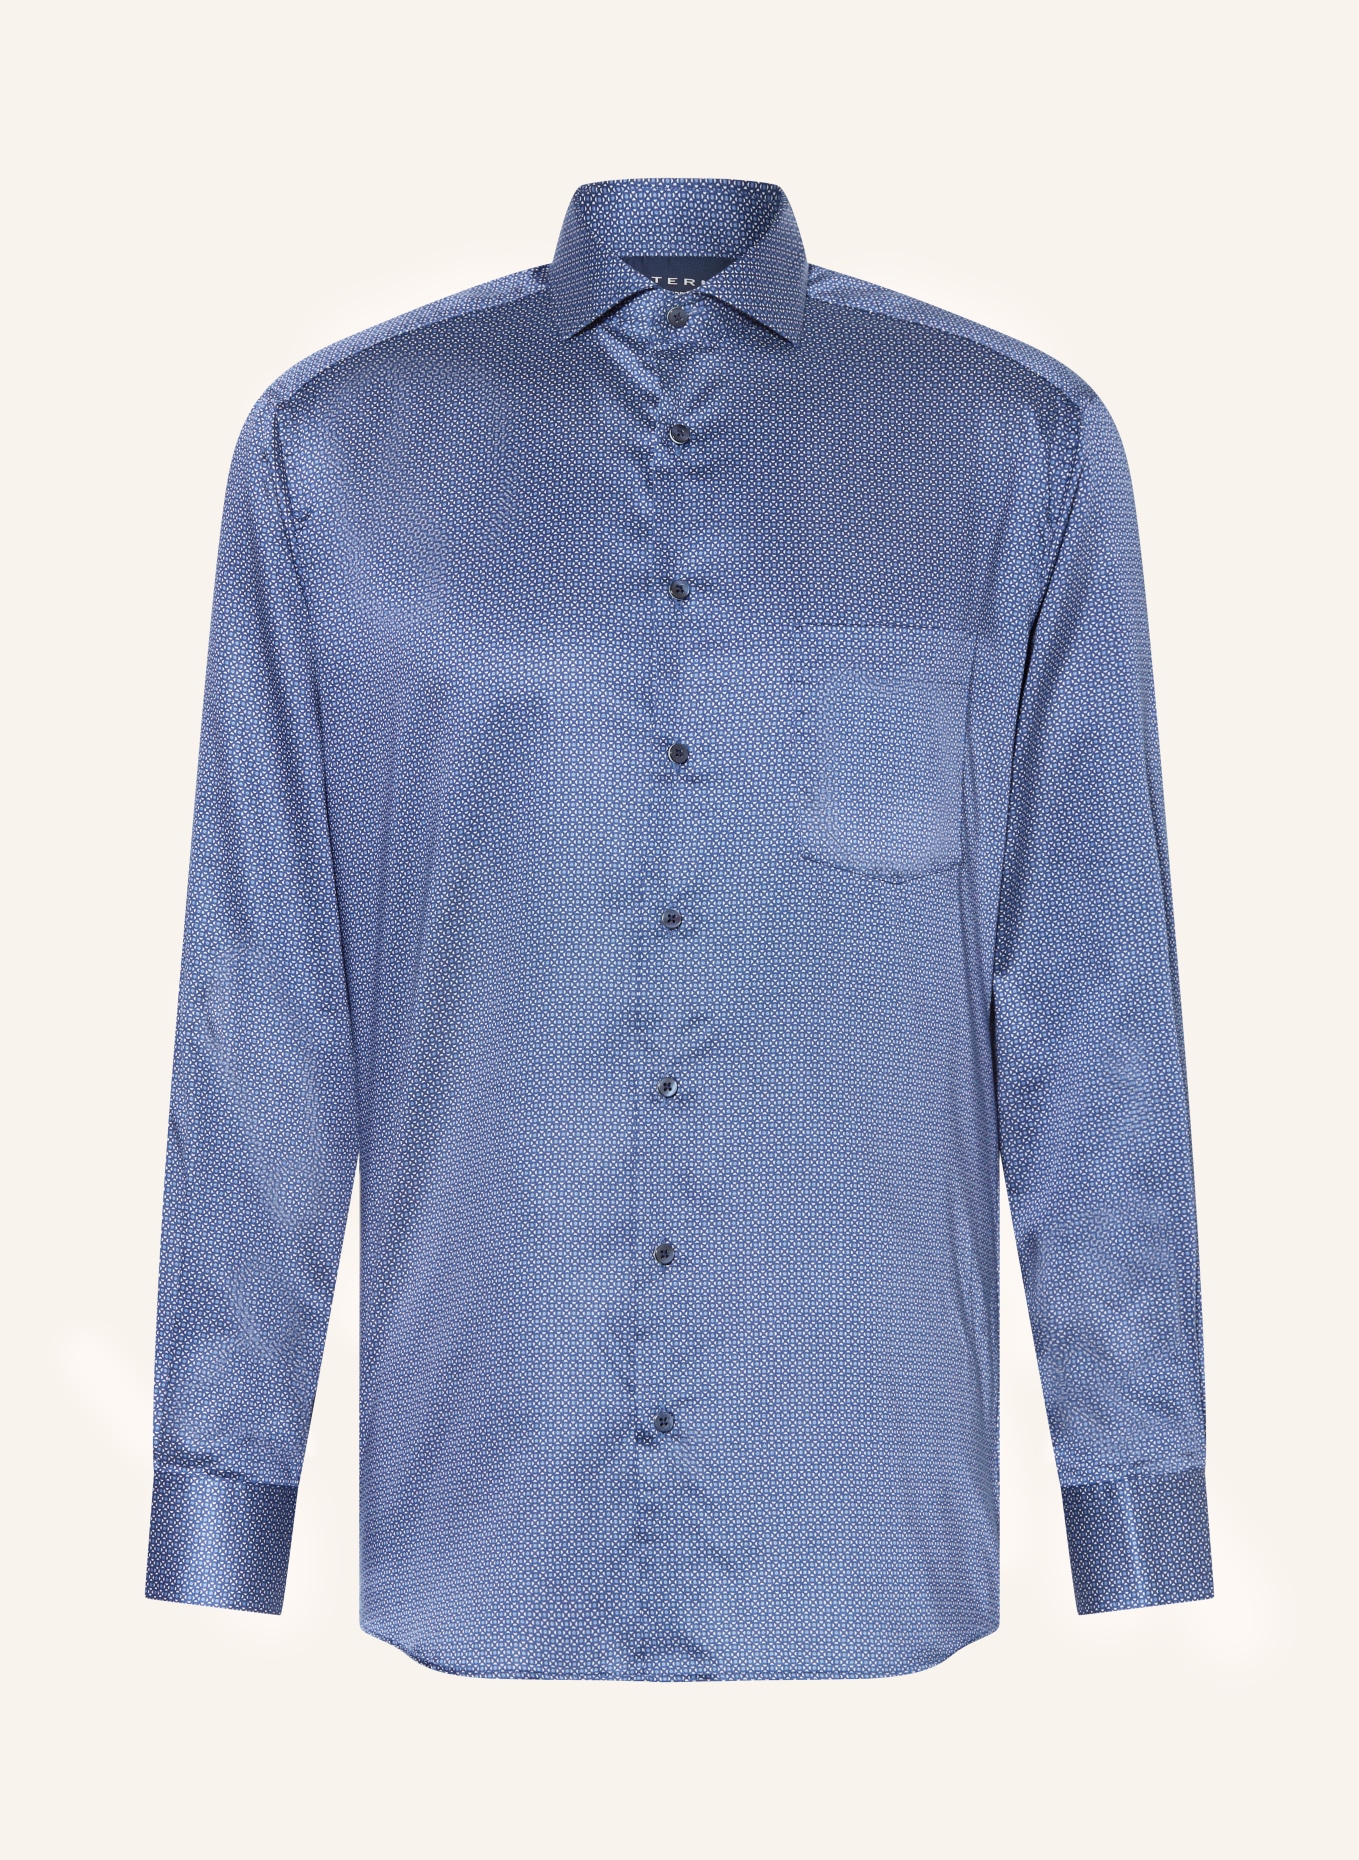 white ETERNA Shirt blue/ fit dark in blue/ modern